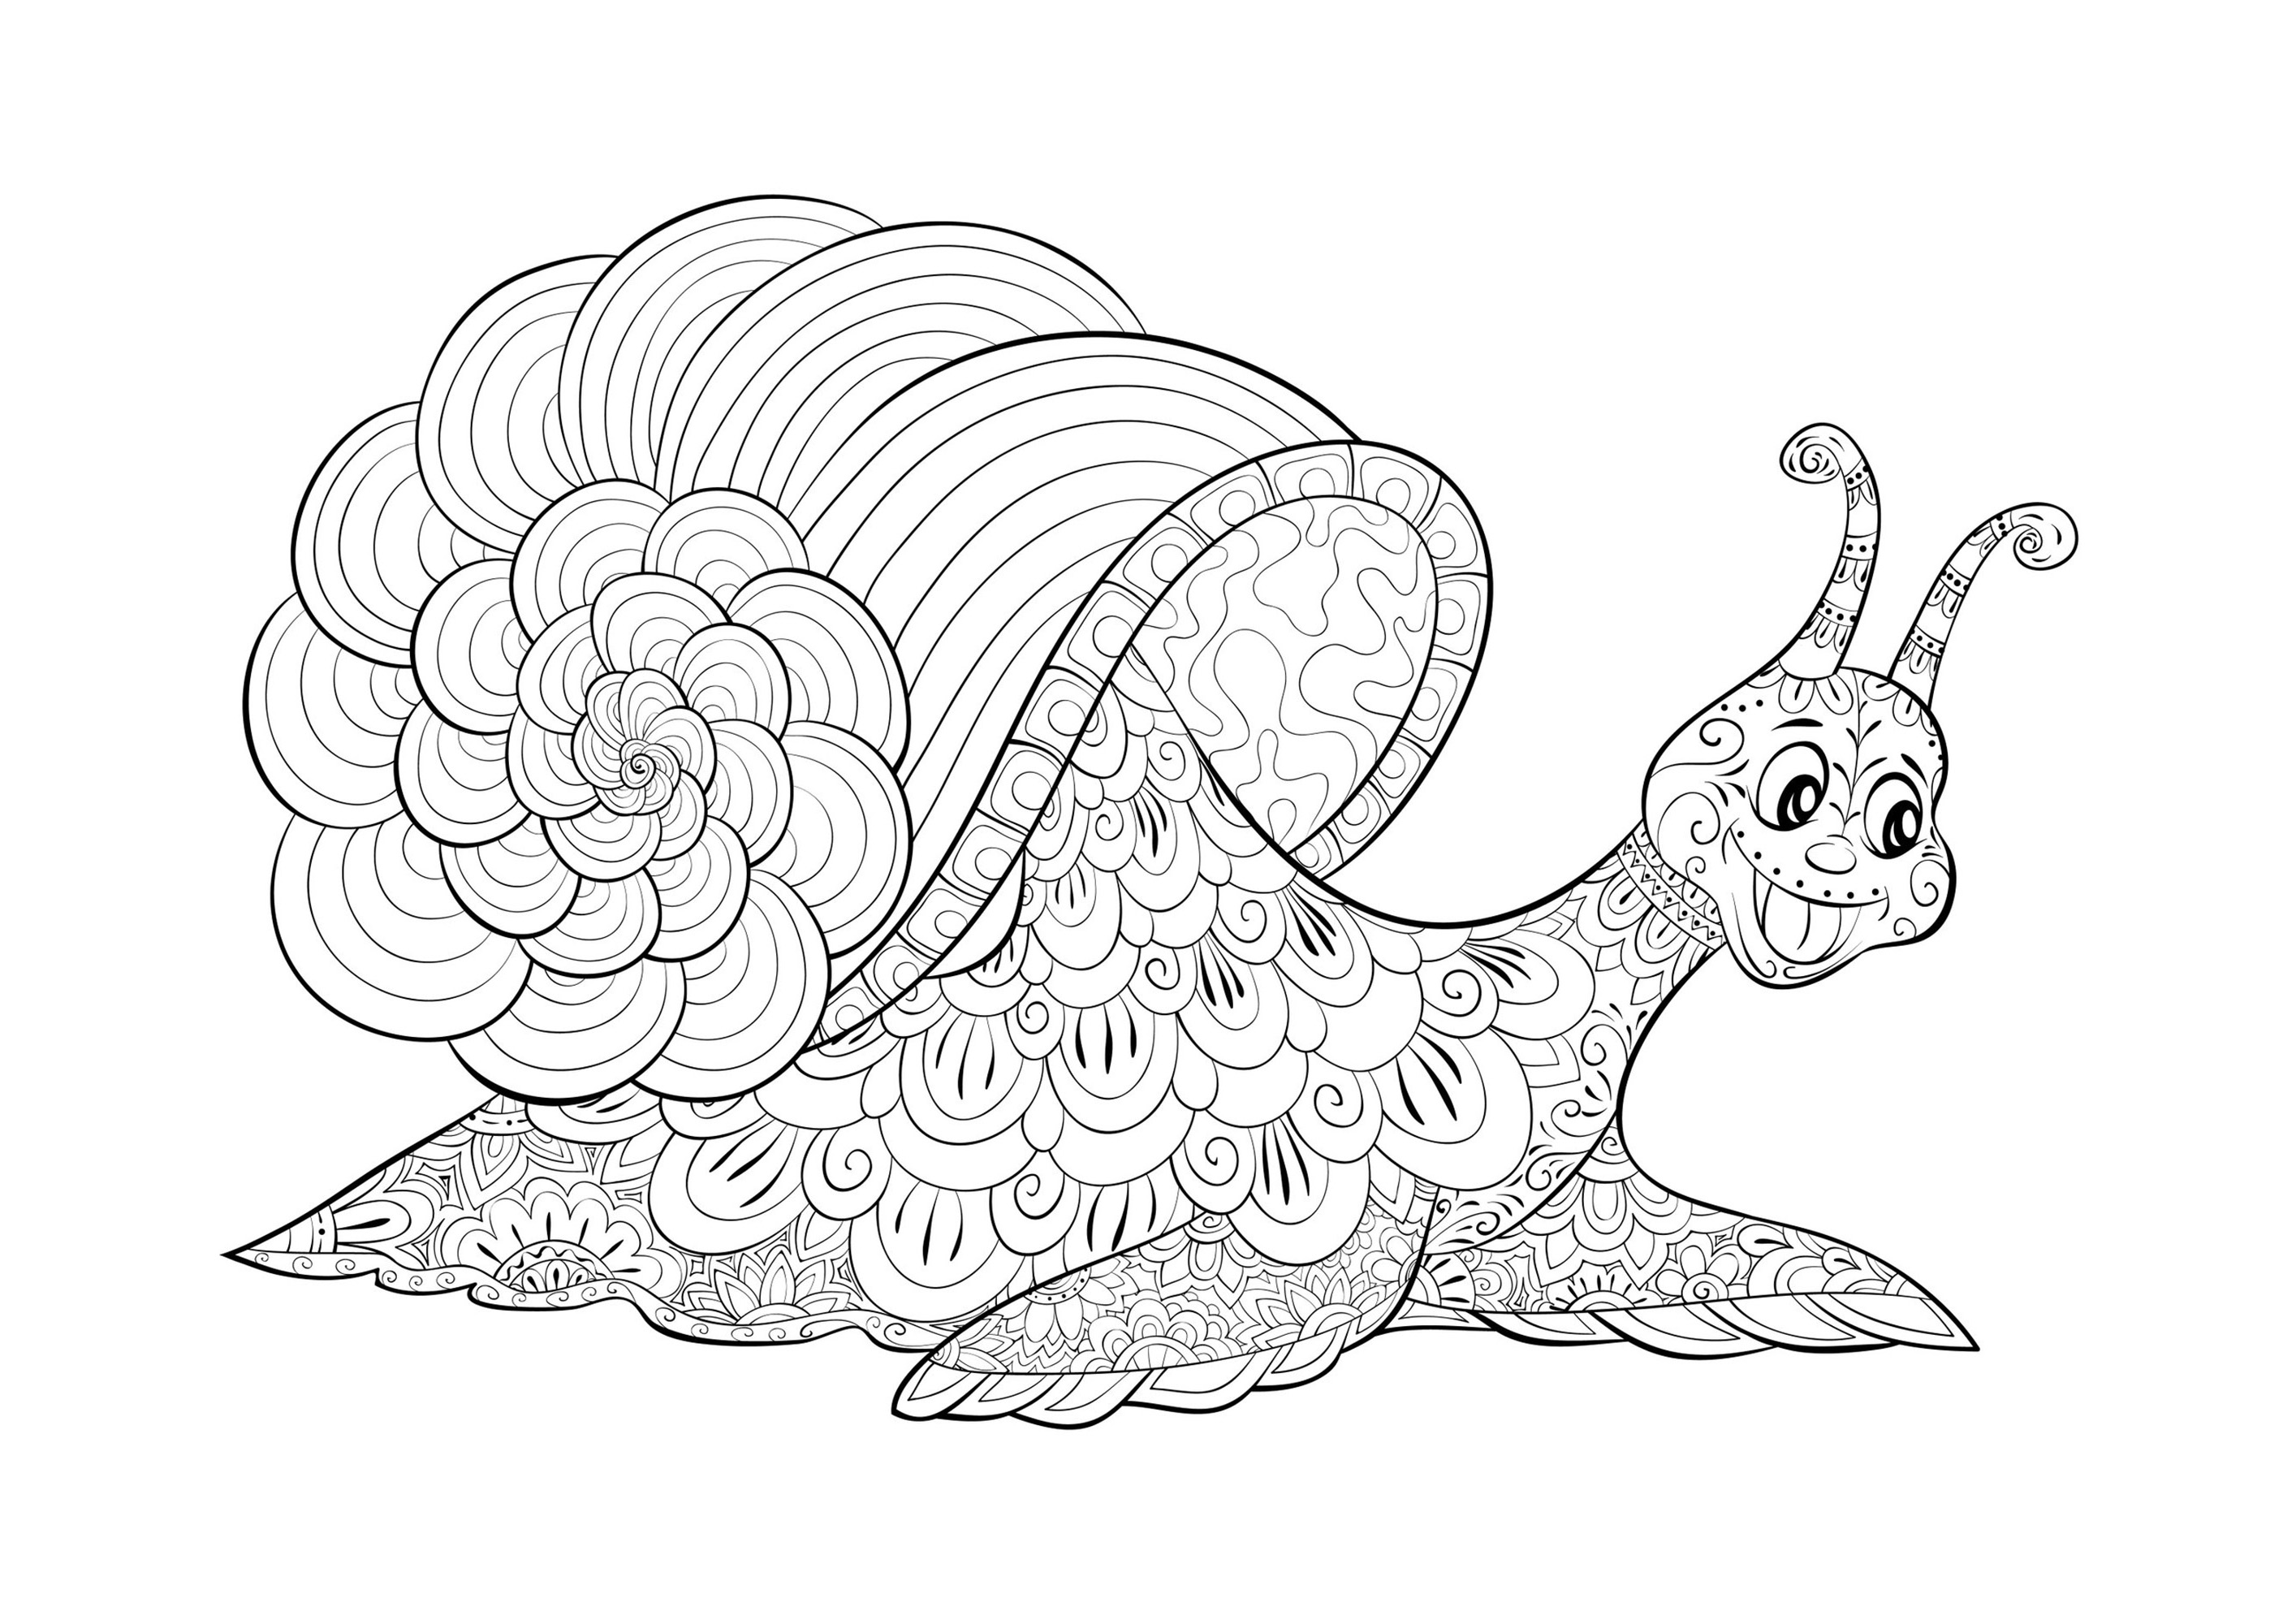 Escargot rigolo - Esta imagen contiene : Caracol